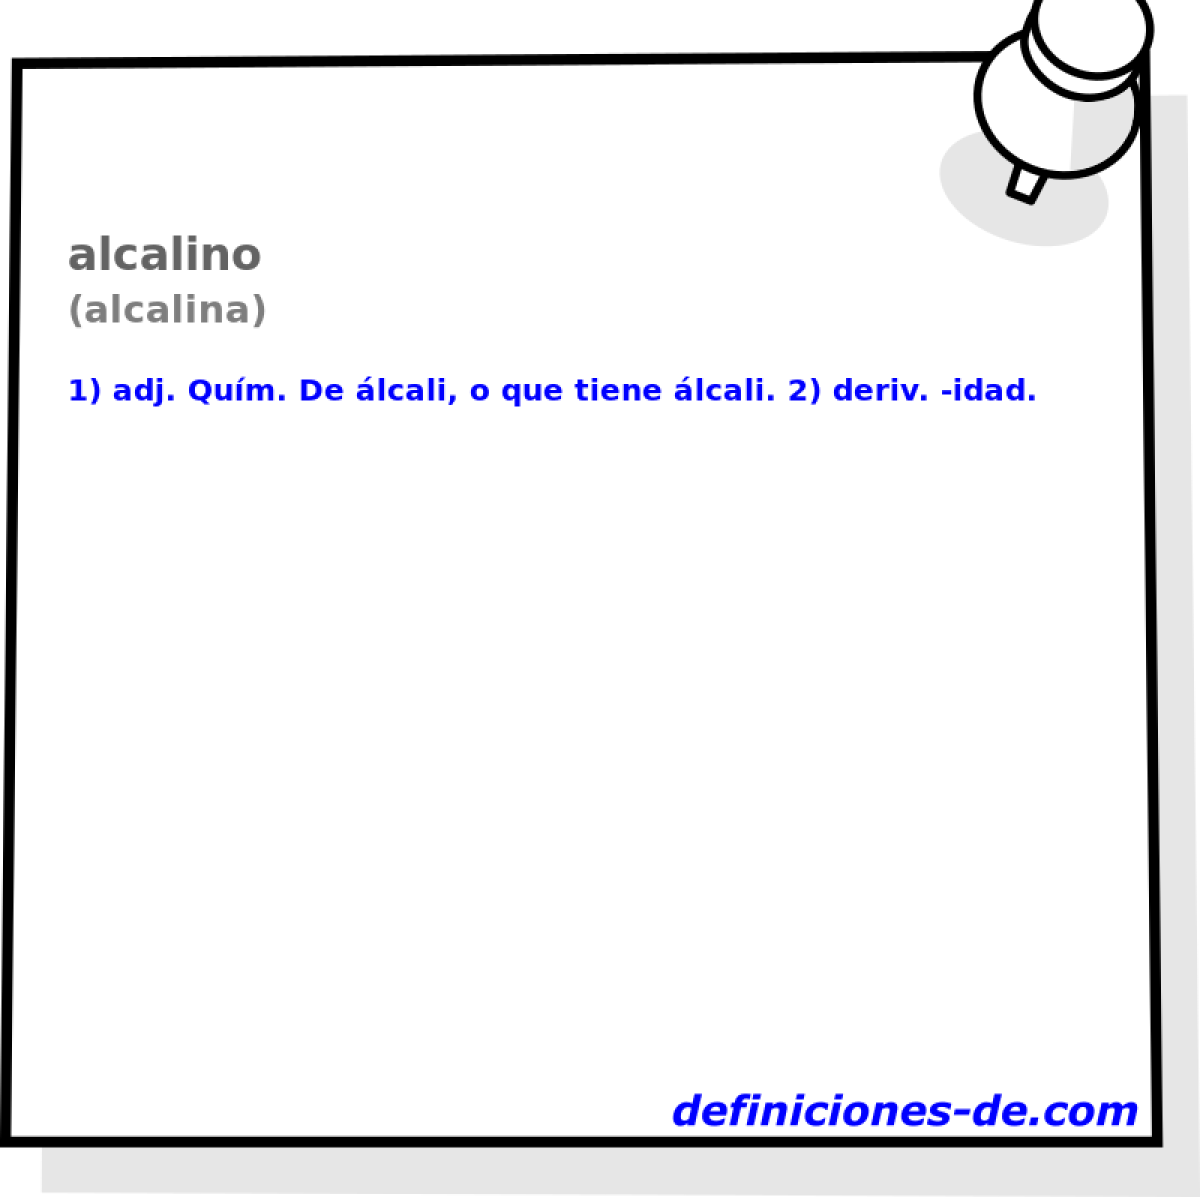 alcalino (alcalina)